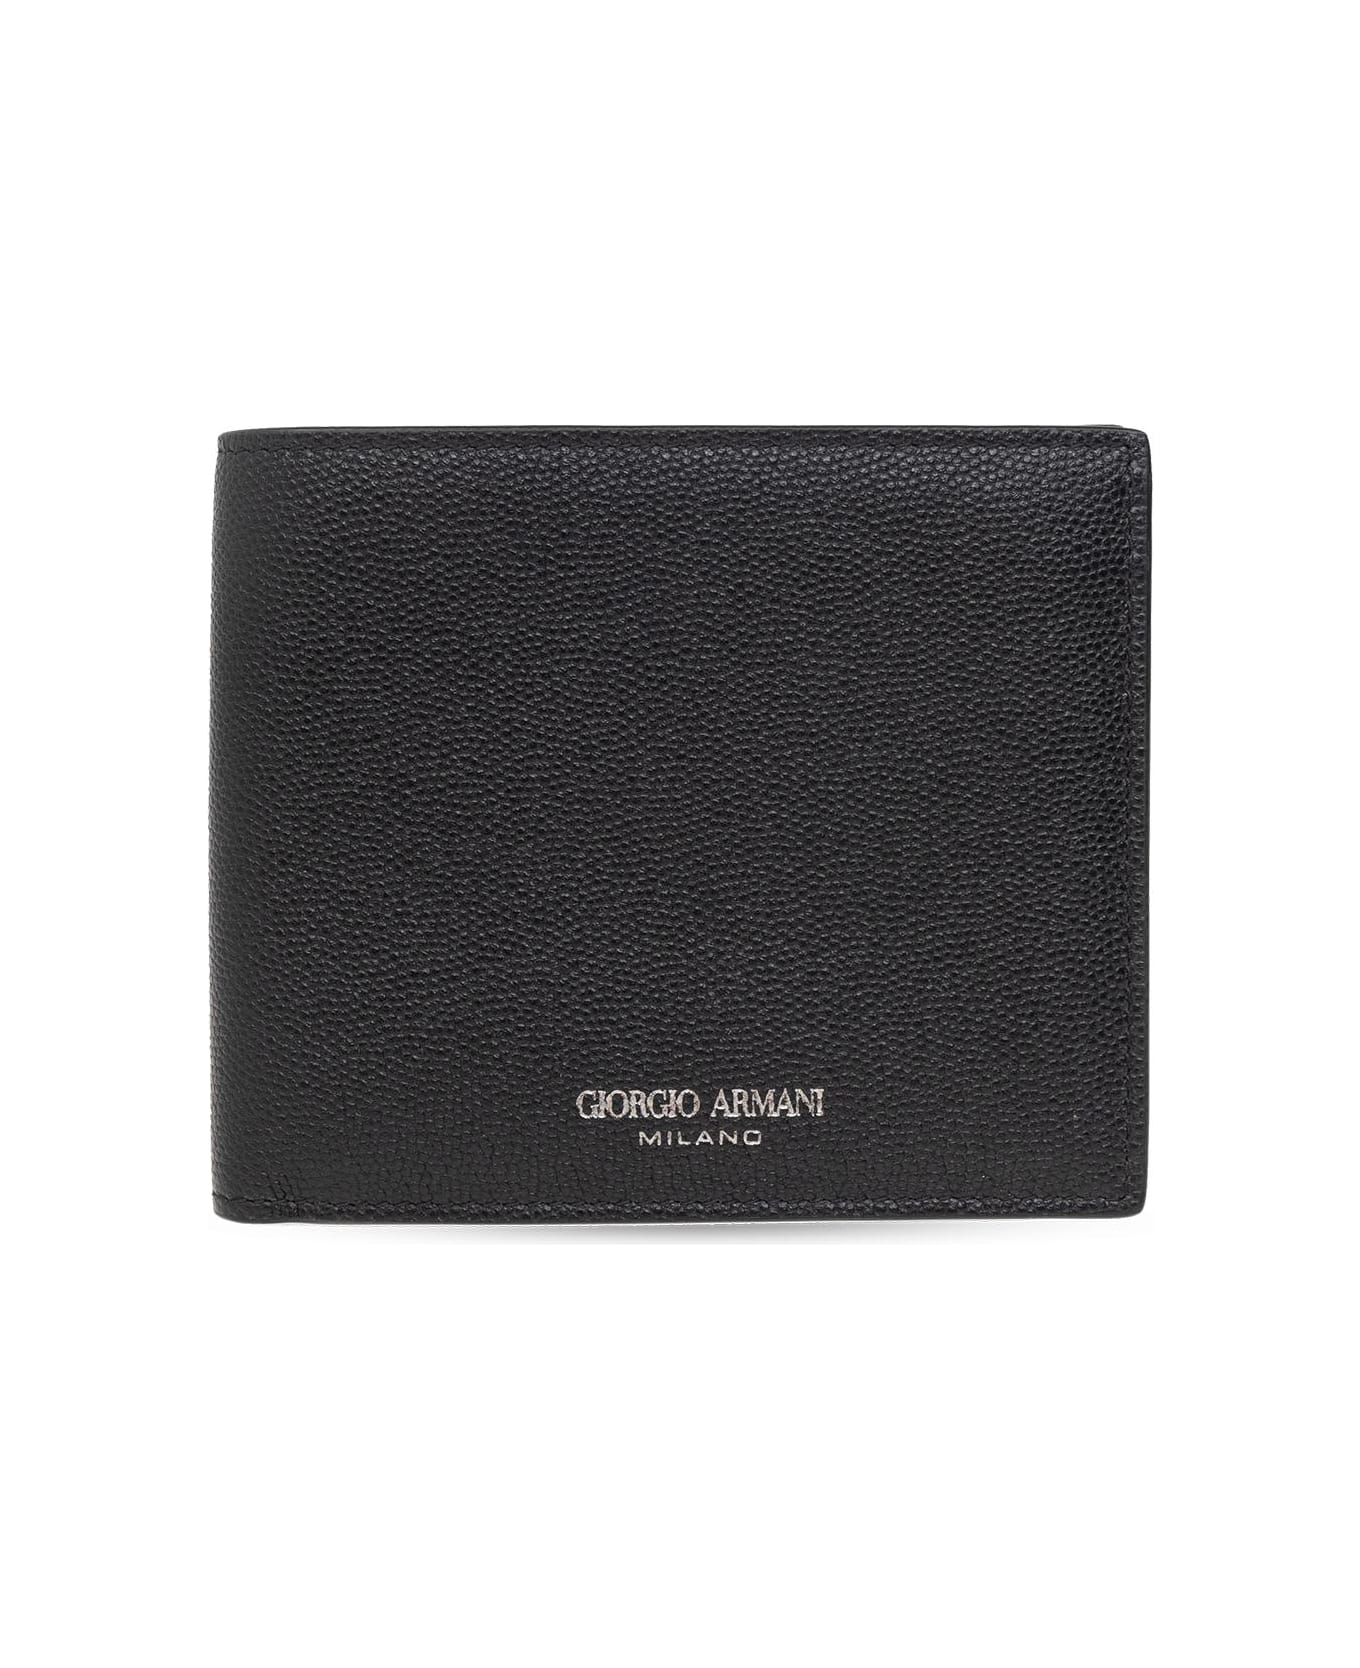 Giorgio Armani Leather Wallet - Nero